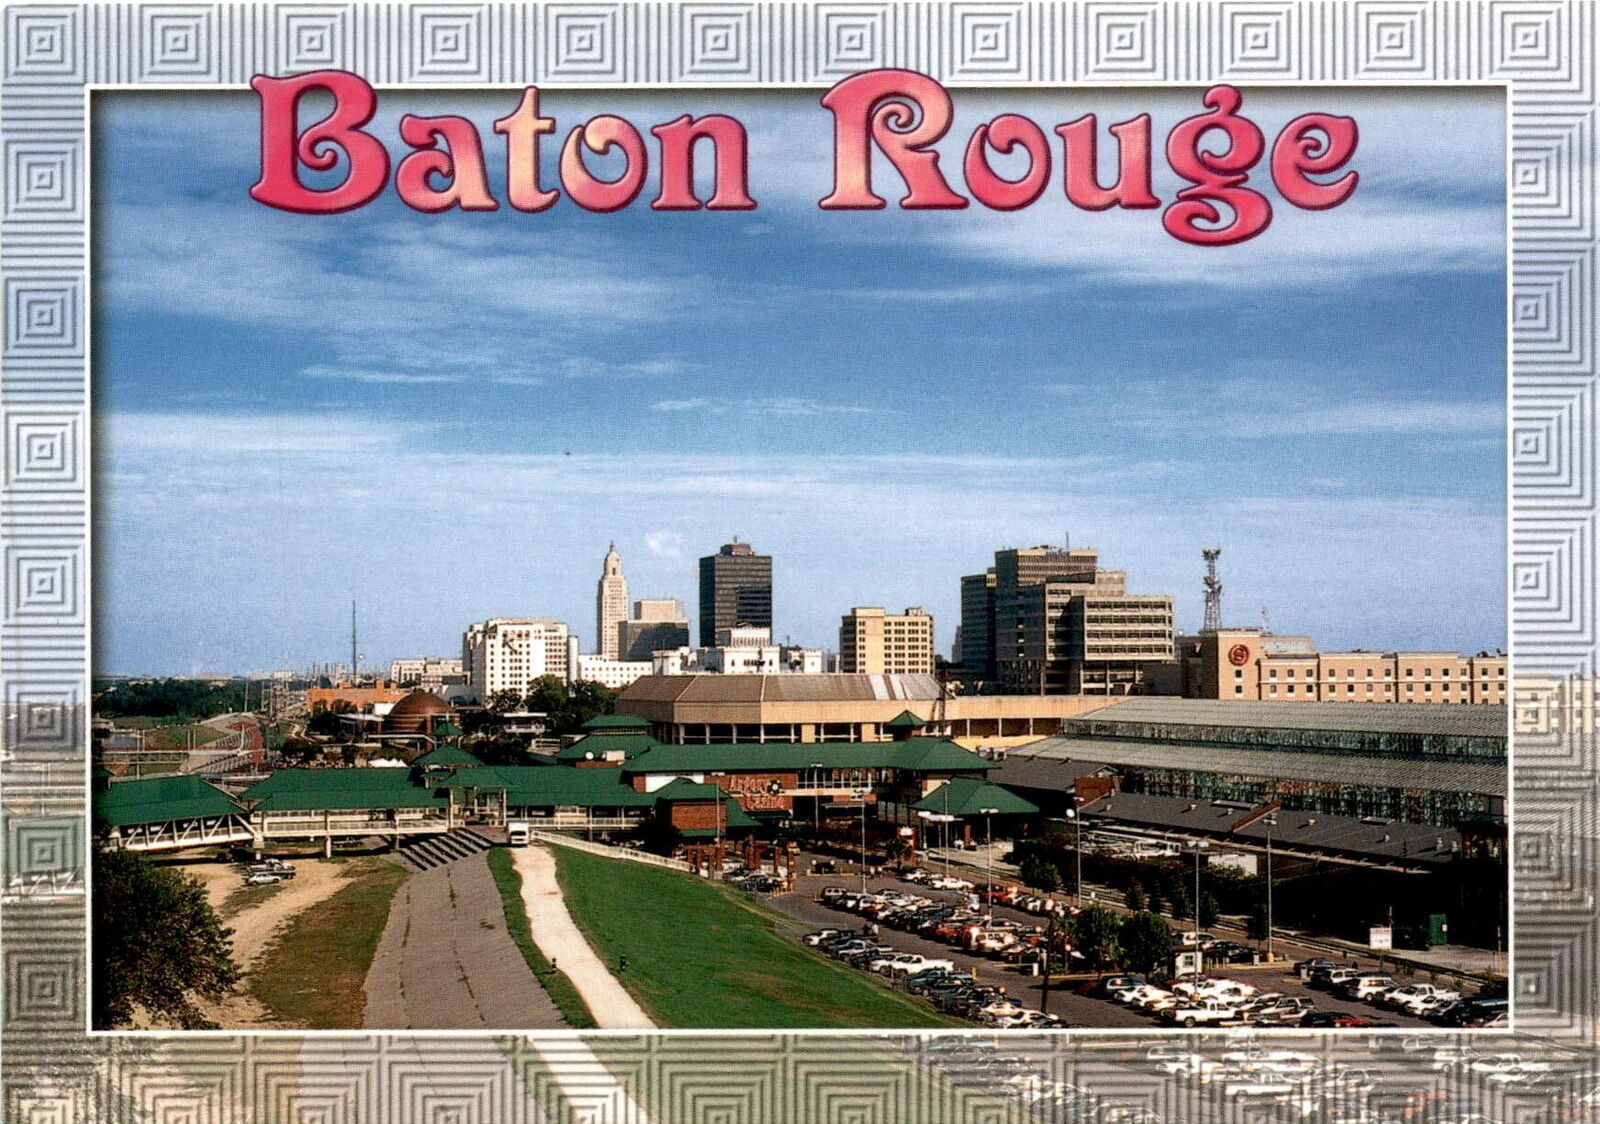 Baton Rouge Louisiana LSU Tigers Cajun Creole cuisine Port industry com postcard